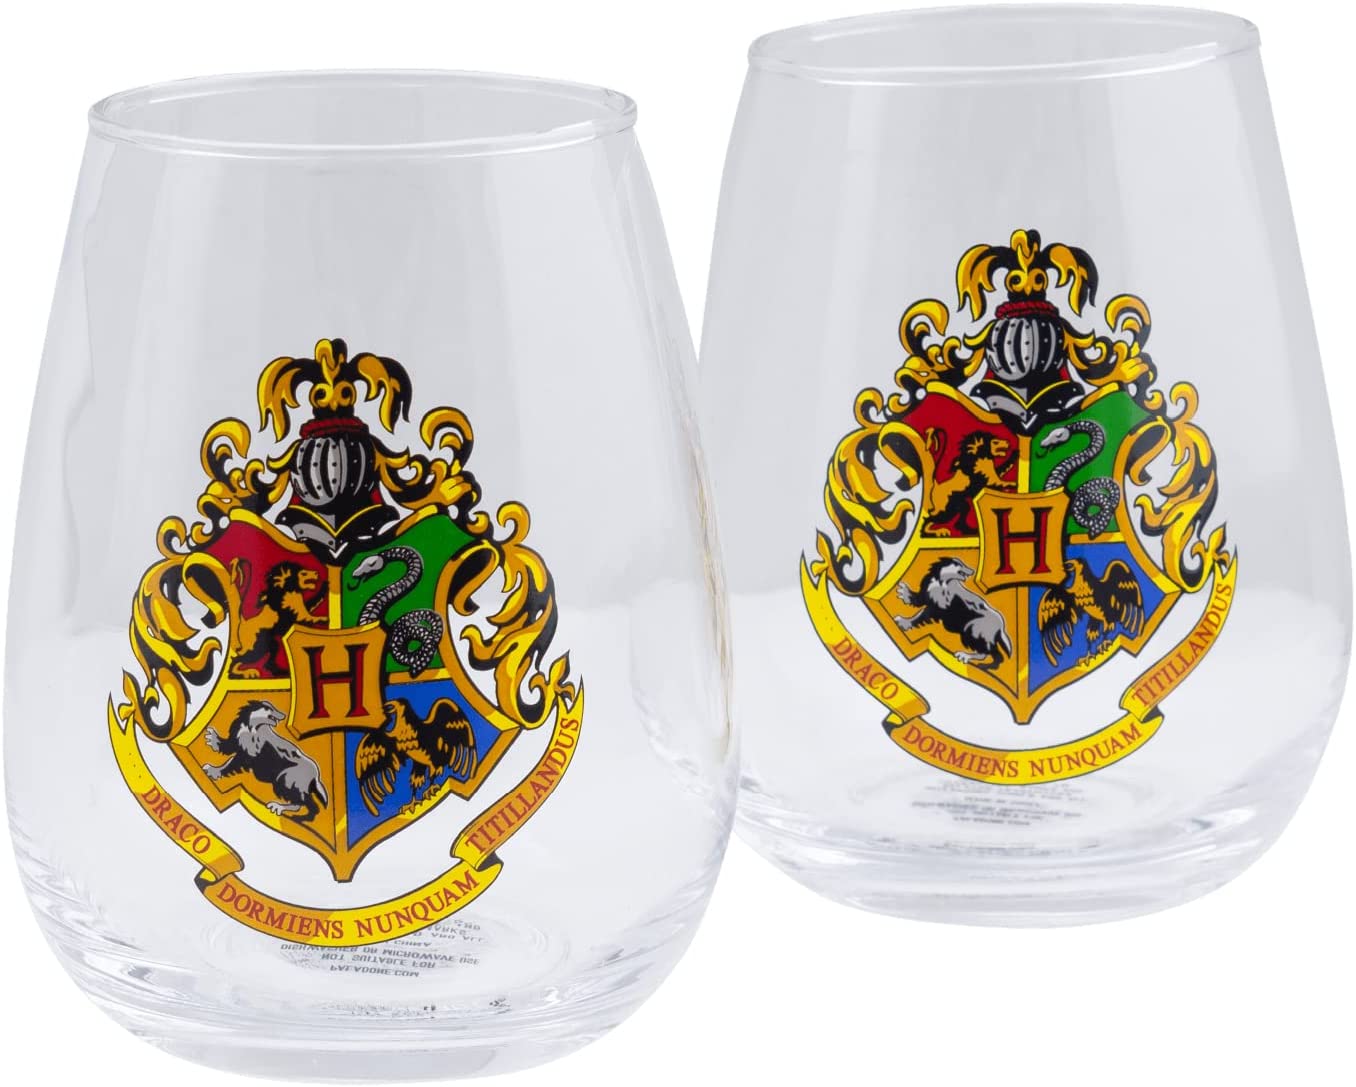 Set of 2 Harry Potter glasses - Hogwarts Crest